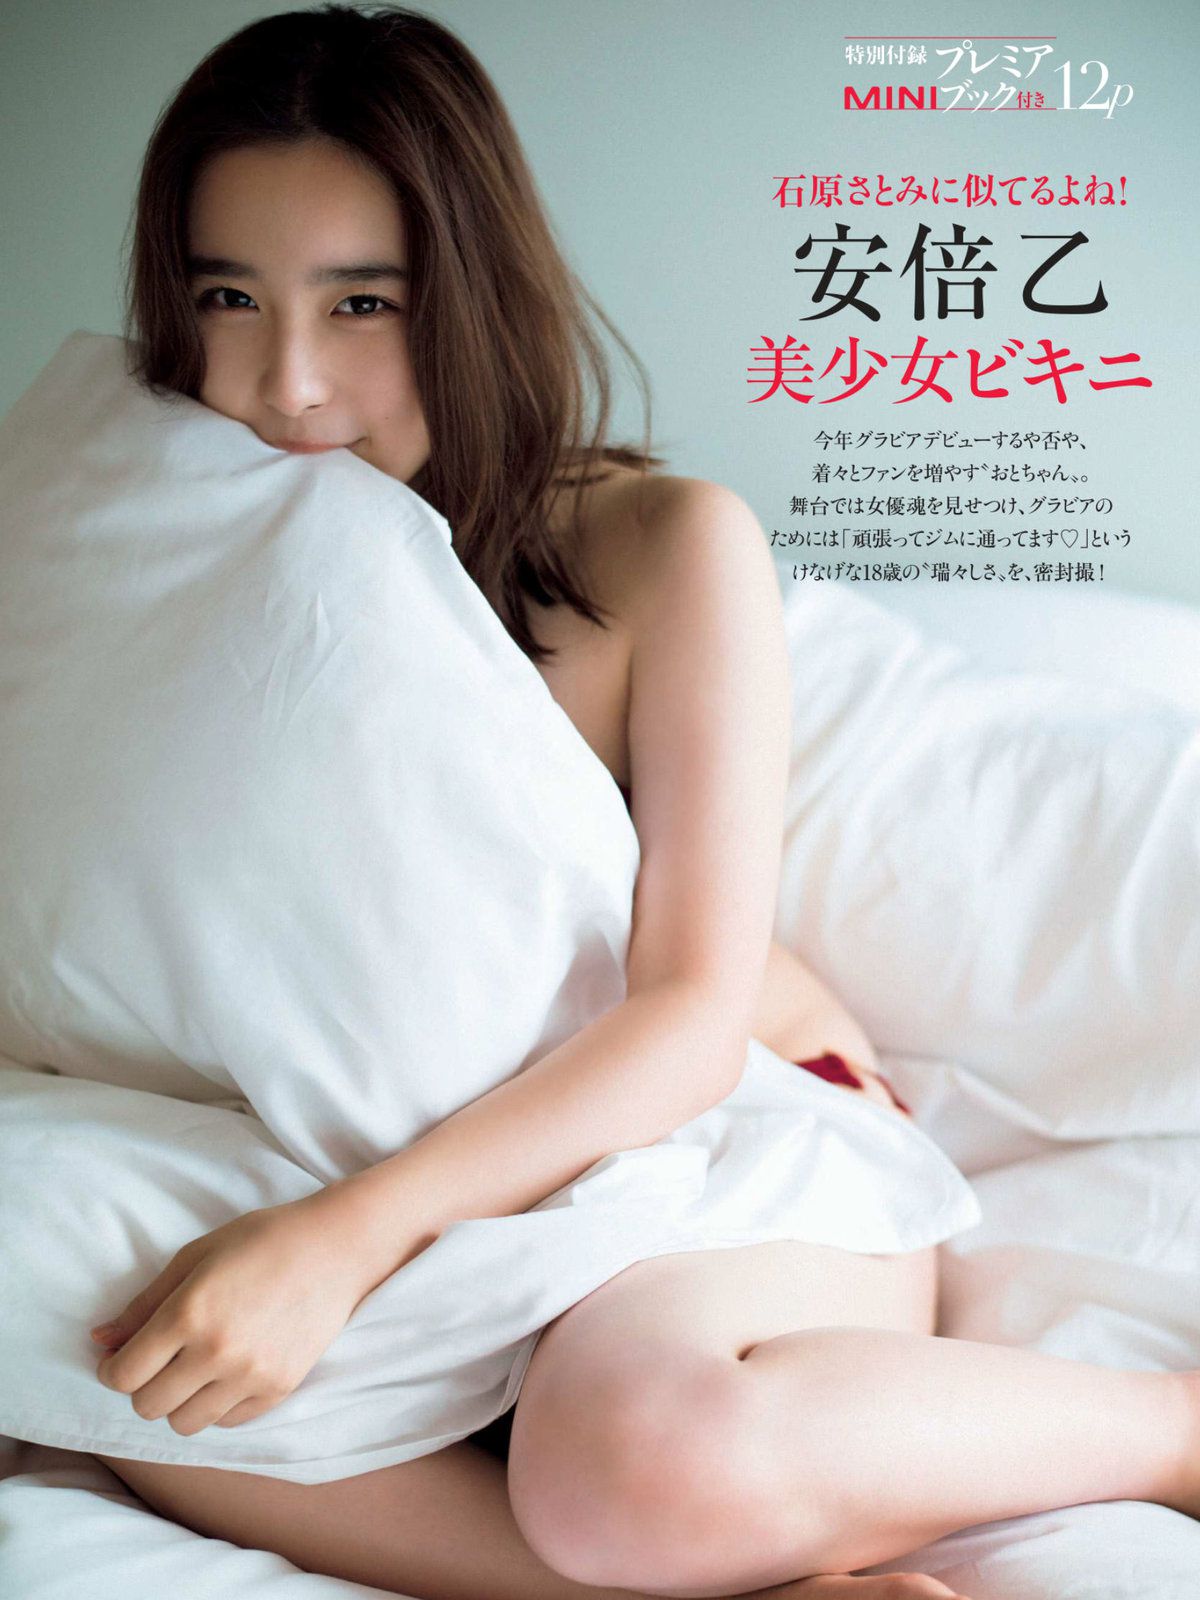 [FRIDAY]大胸日本少女:安倍乙无圣光私房照片在线浏览(17P)